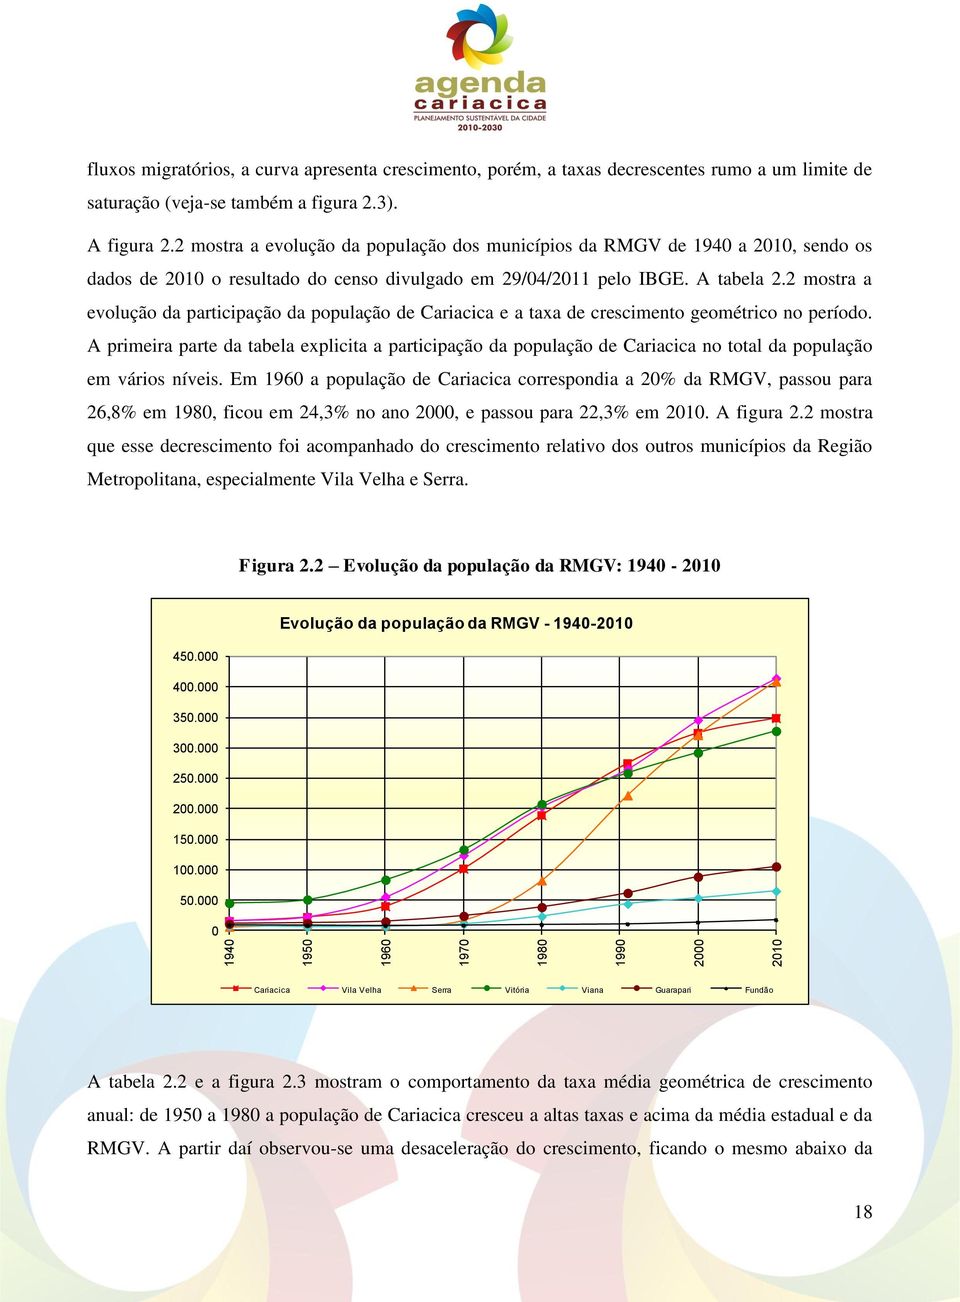 2 mostra a evolução da participação da população de Cariacica e a taxa de crescimento geométrico no período.